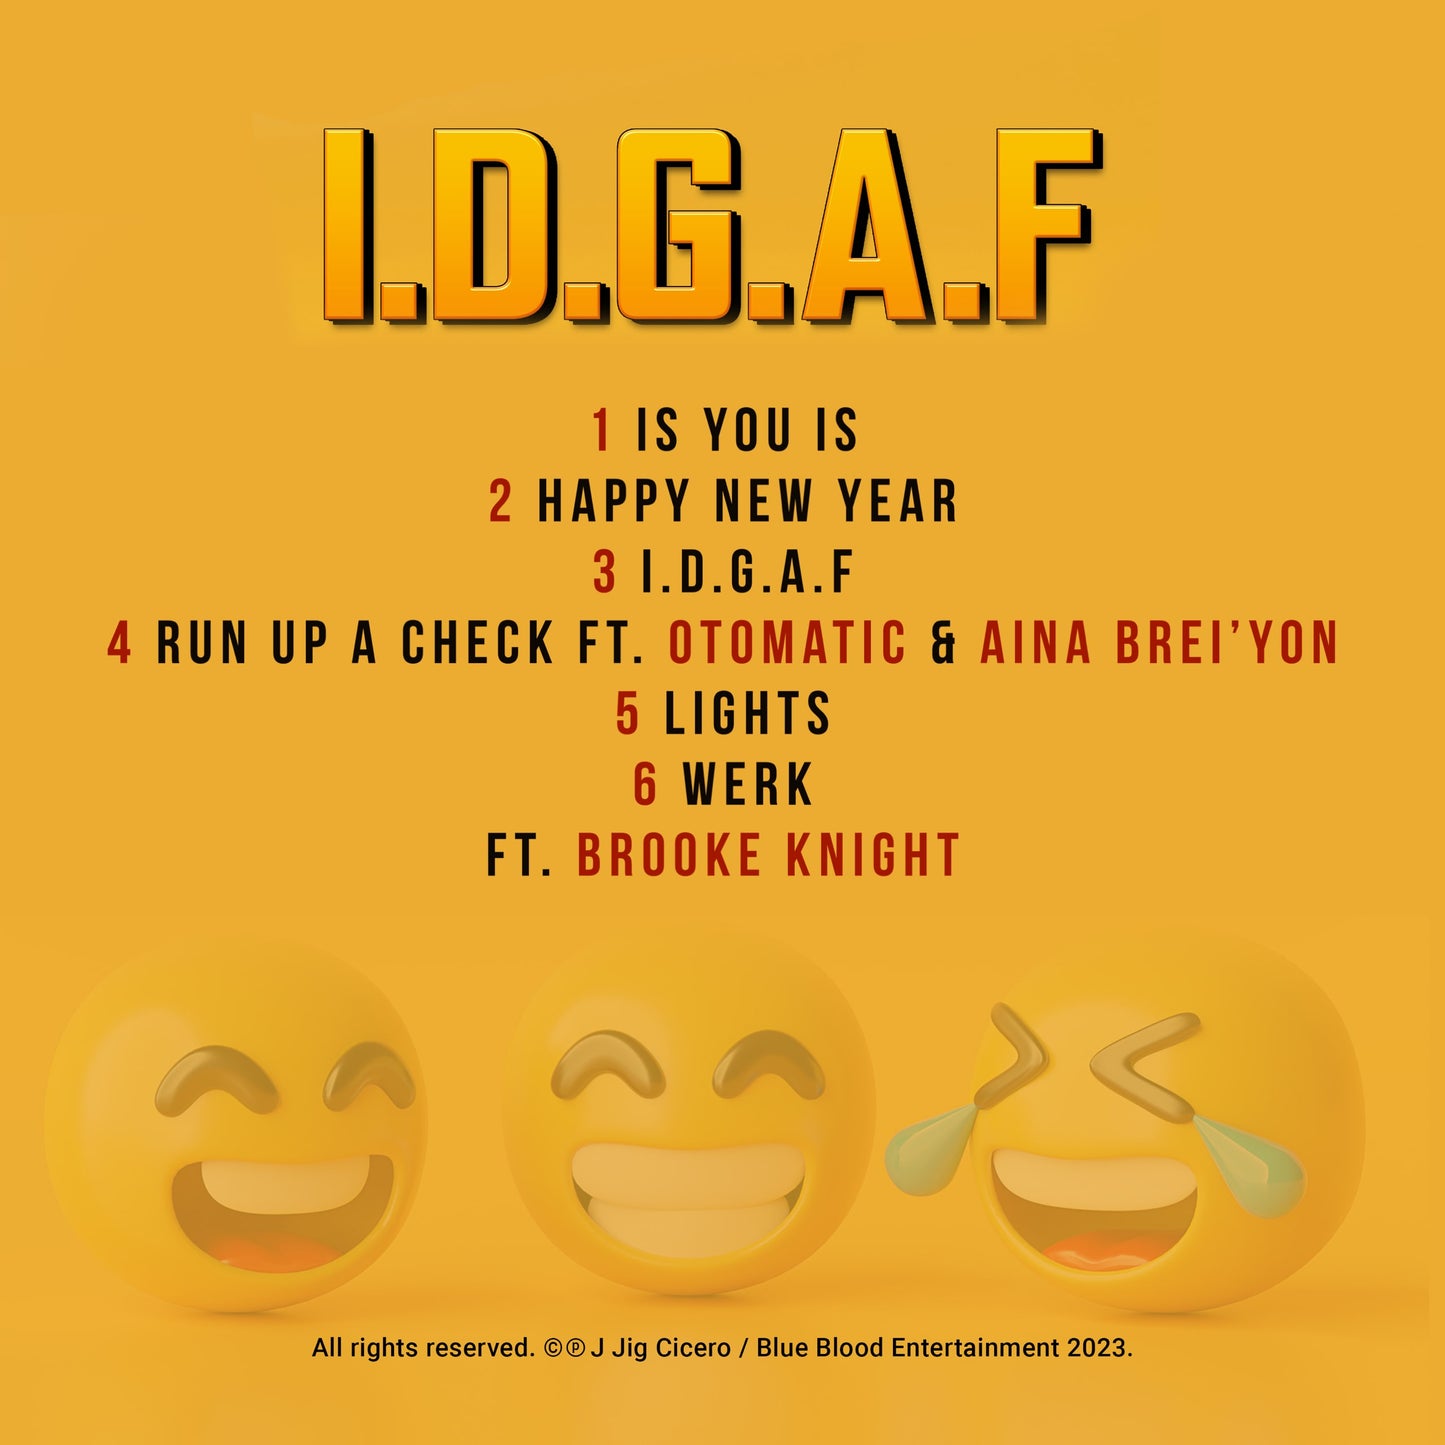 I.D.G.A.F Autographed CD